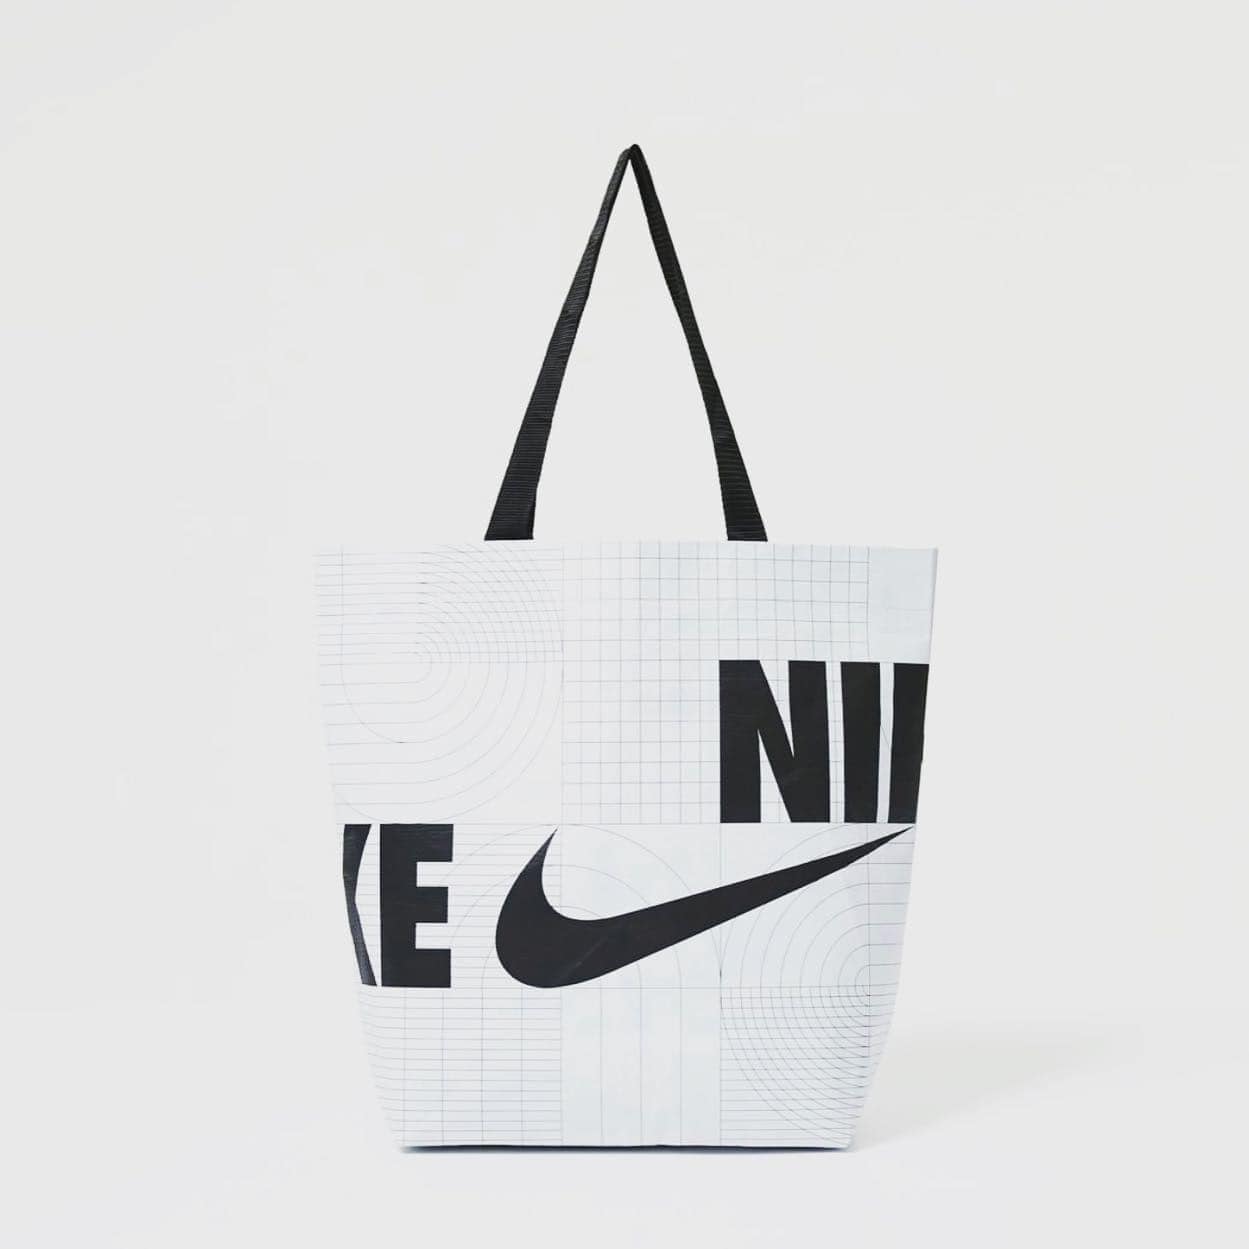 กระเป๋าถือ Nike รุ่นยอดฮิตมี 3 ขนาด ราคาดีที่สุด! ร้านไทยจัดส่งเร็ว Preorder